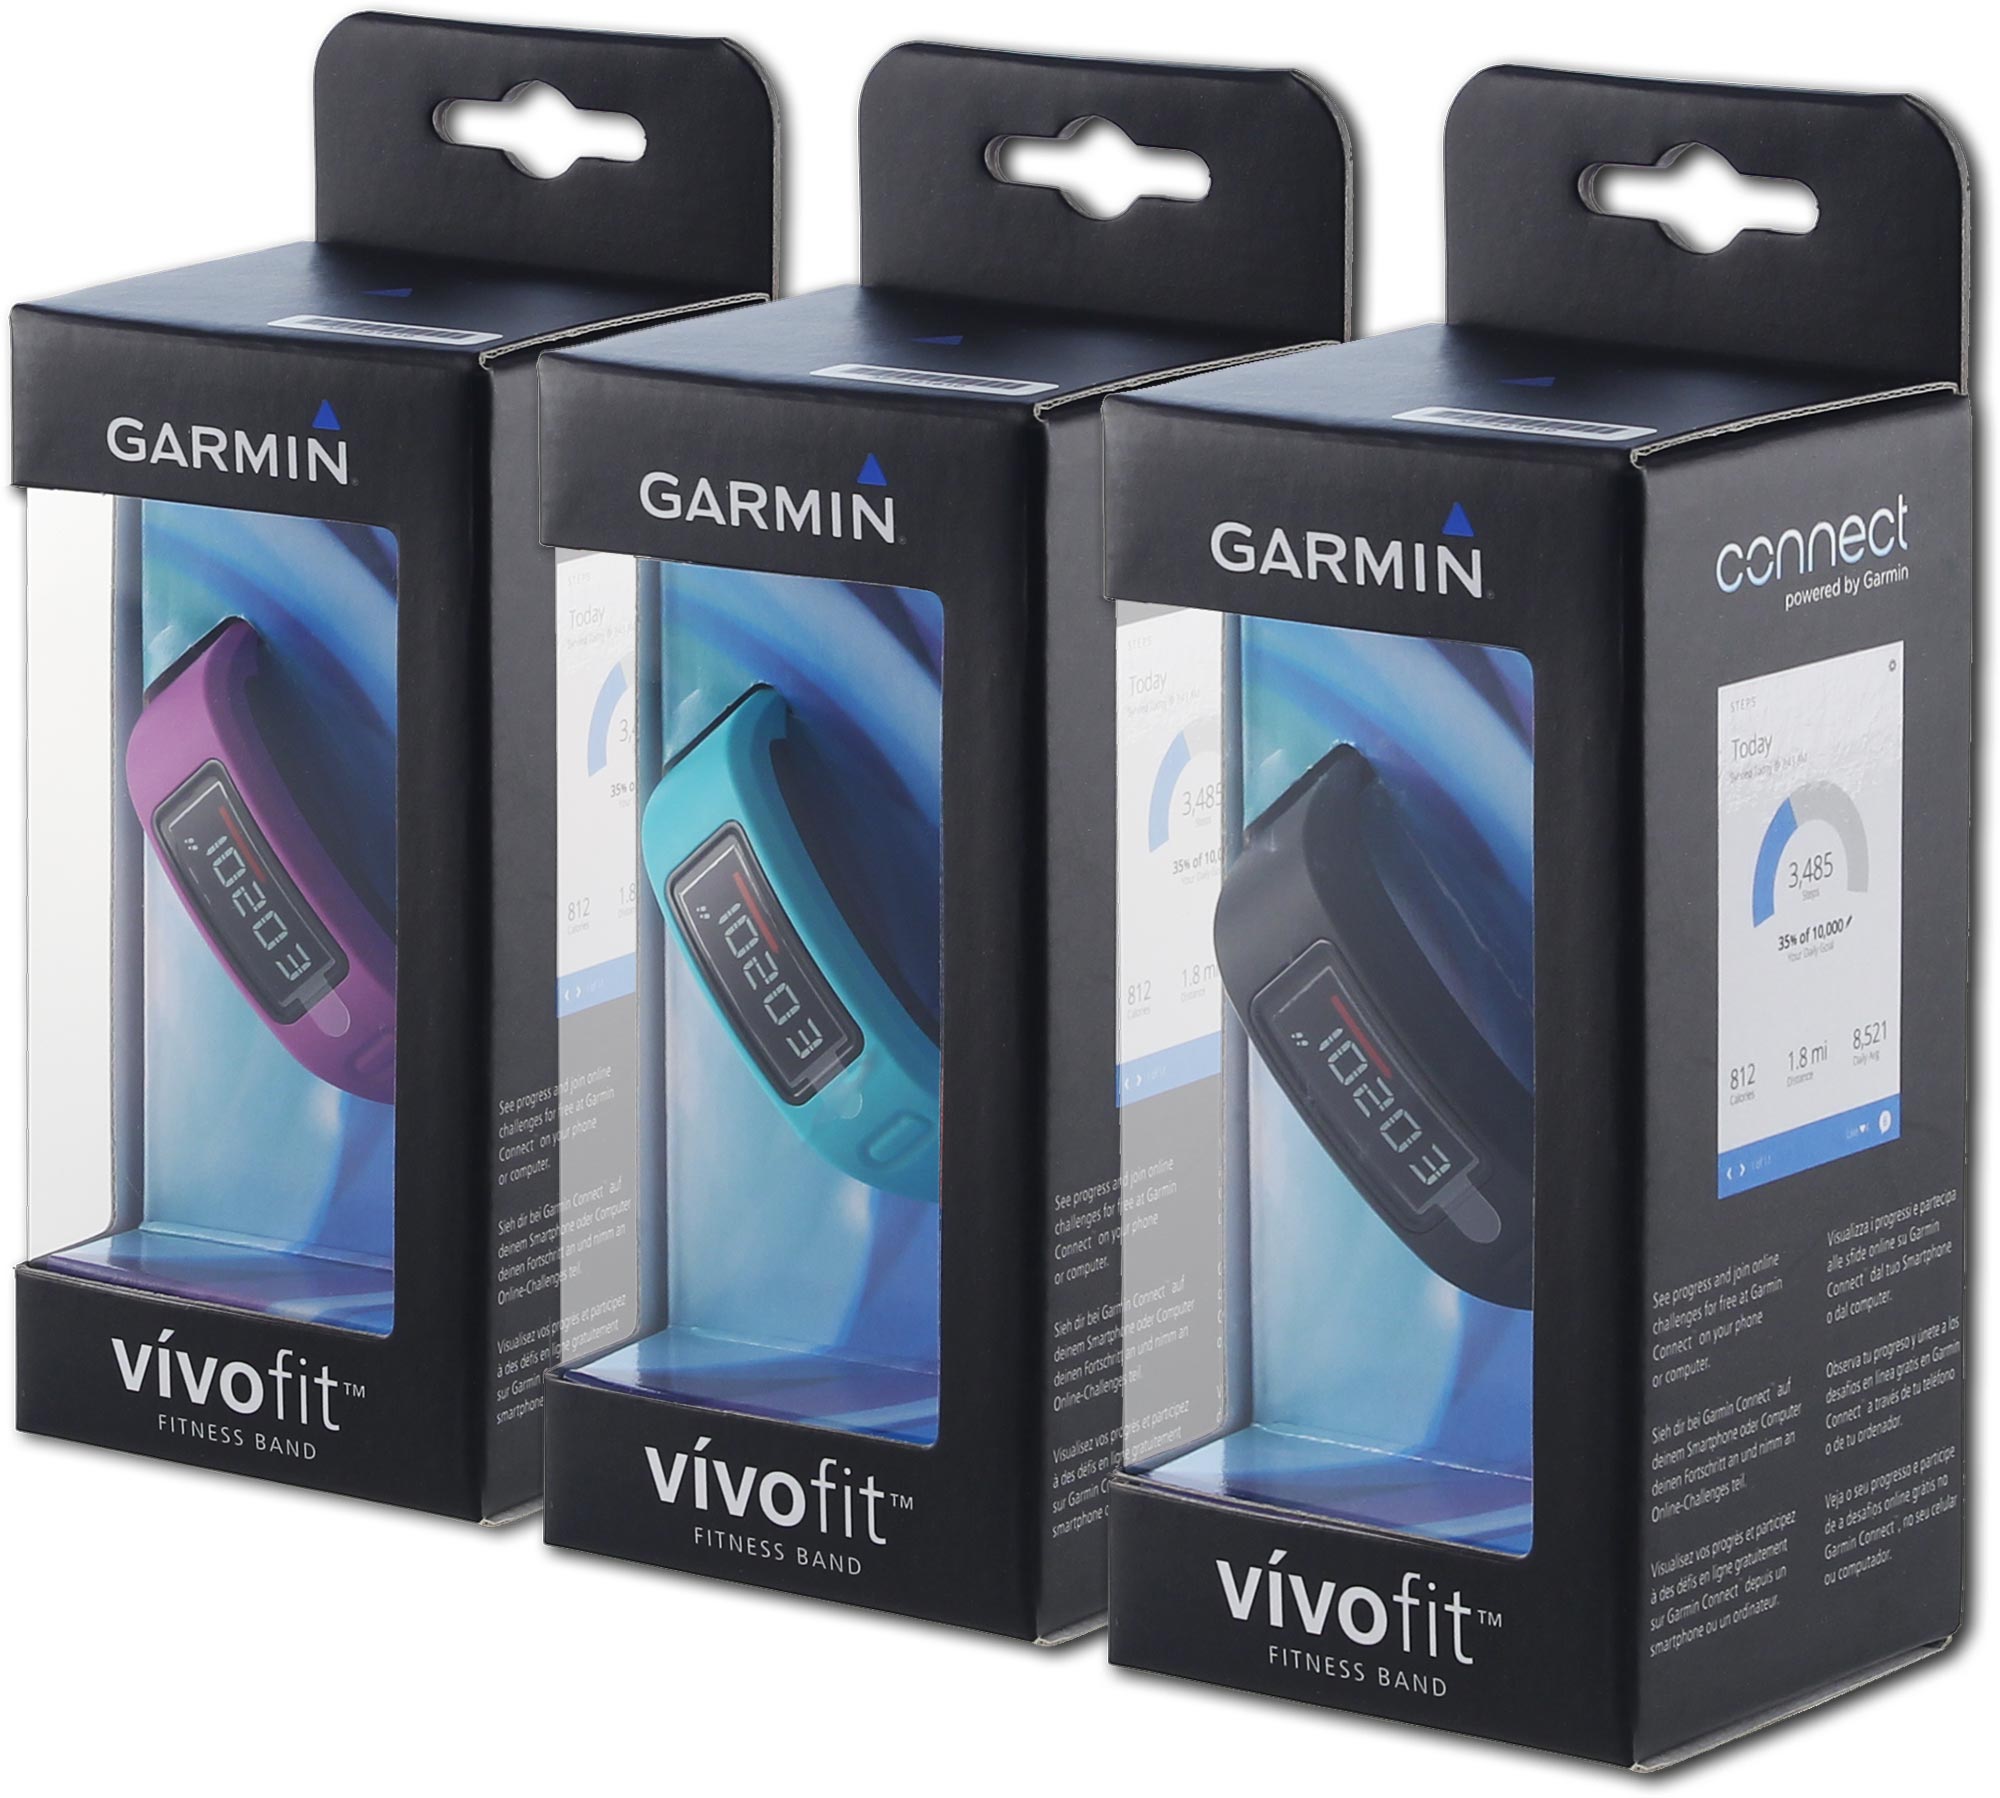 Garmin vivofit packaging